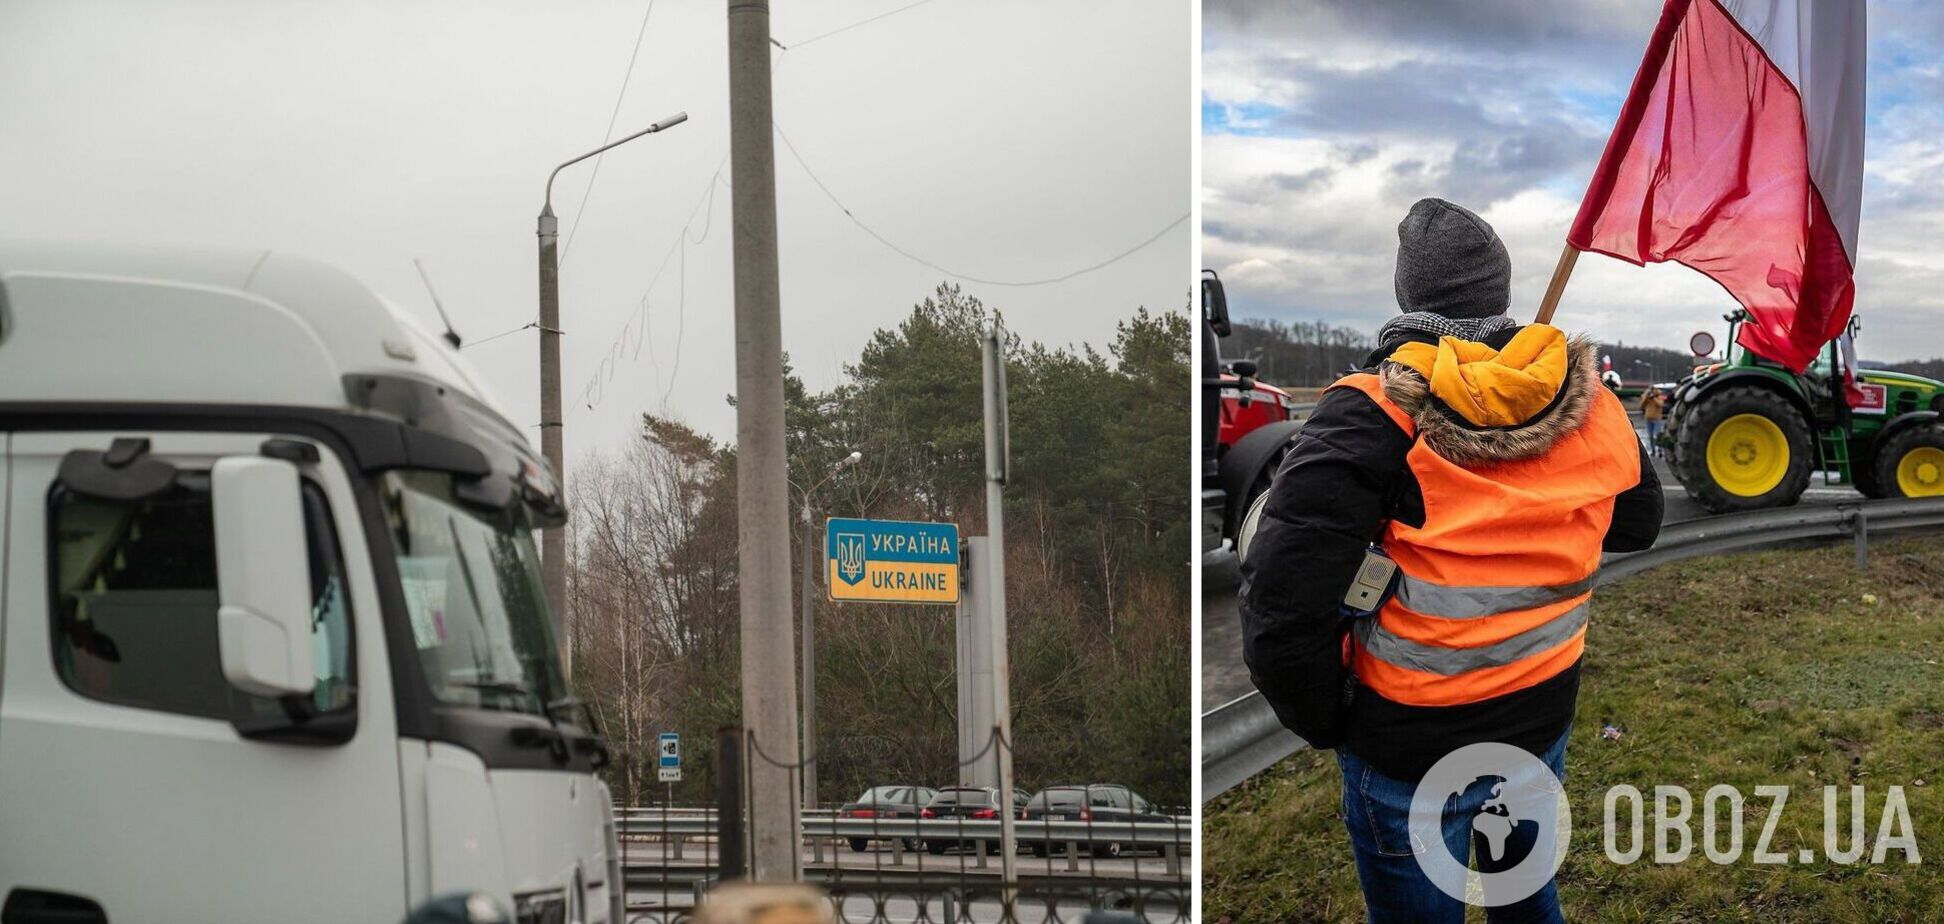 Блокада поляками границы Украины